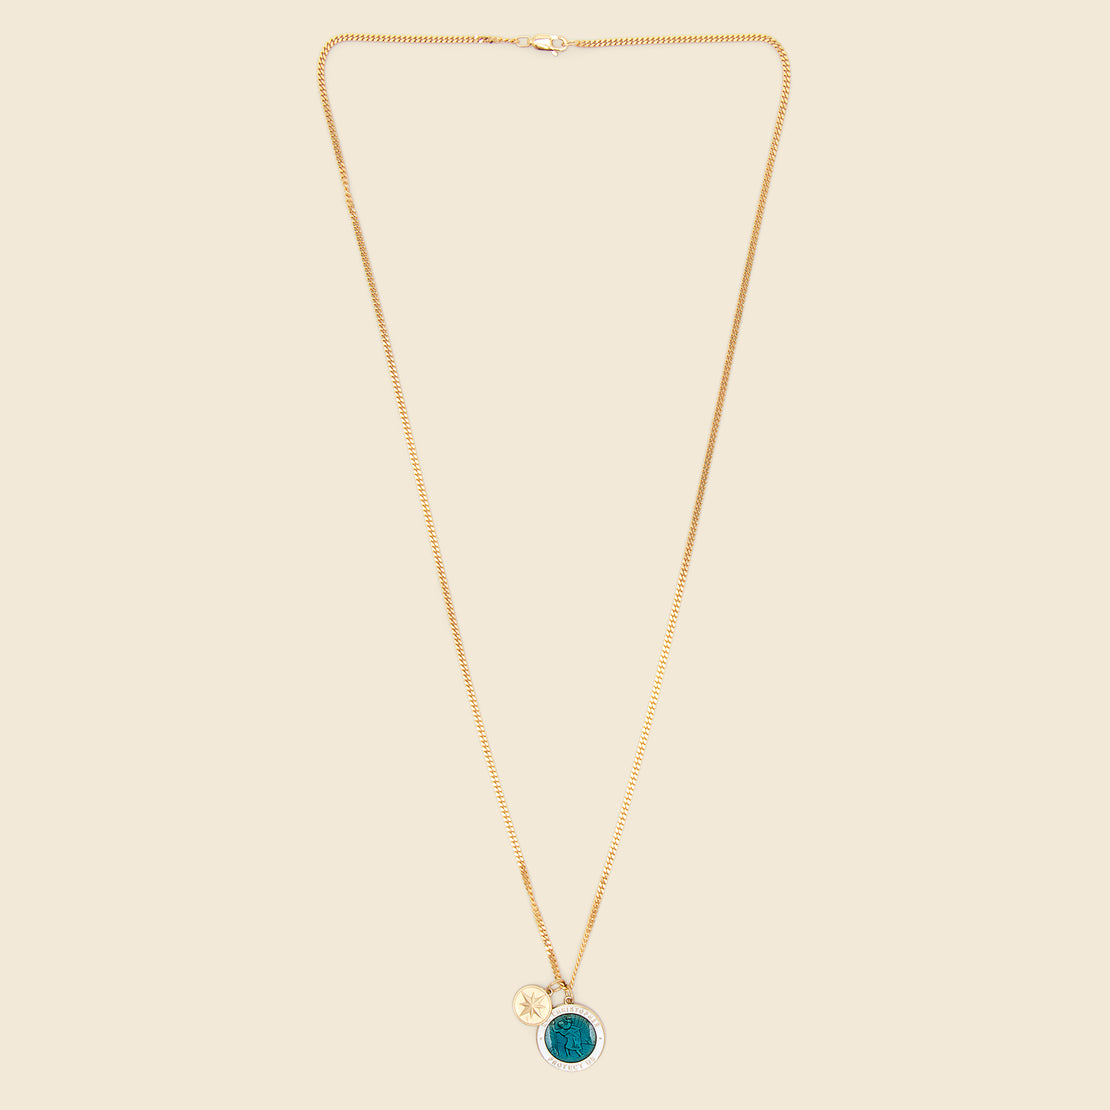 Saint Christopher Surf Necklace - Caribbean Blue & White Enamel/Gold Vermeil - Miansai - STAG Provisions - Accessories - Necklaces